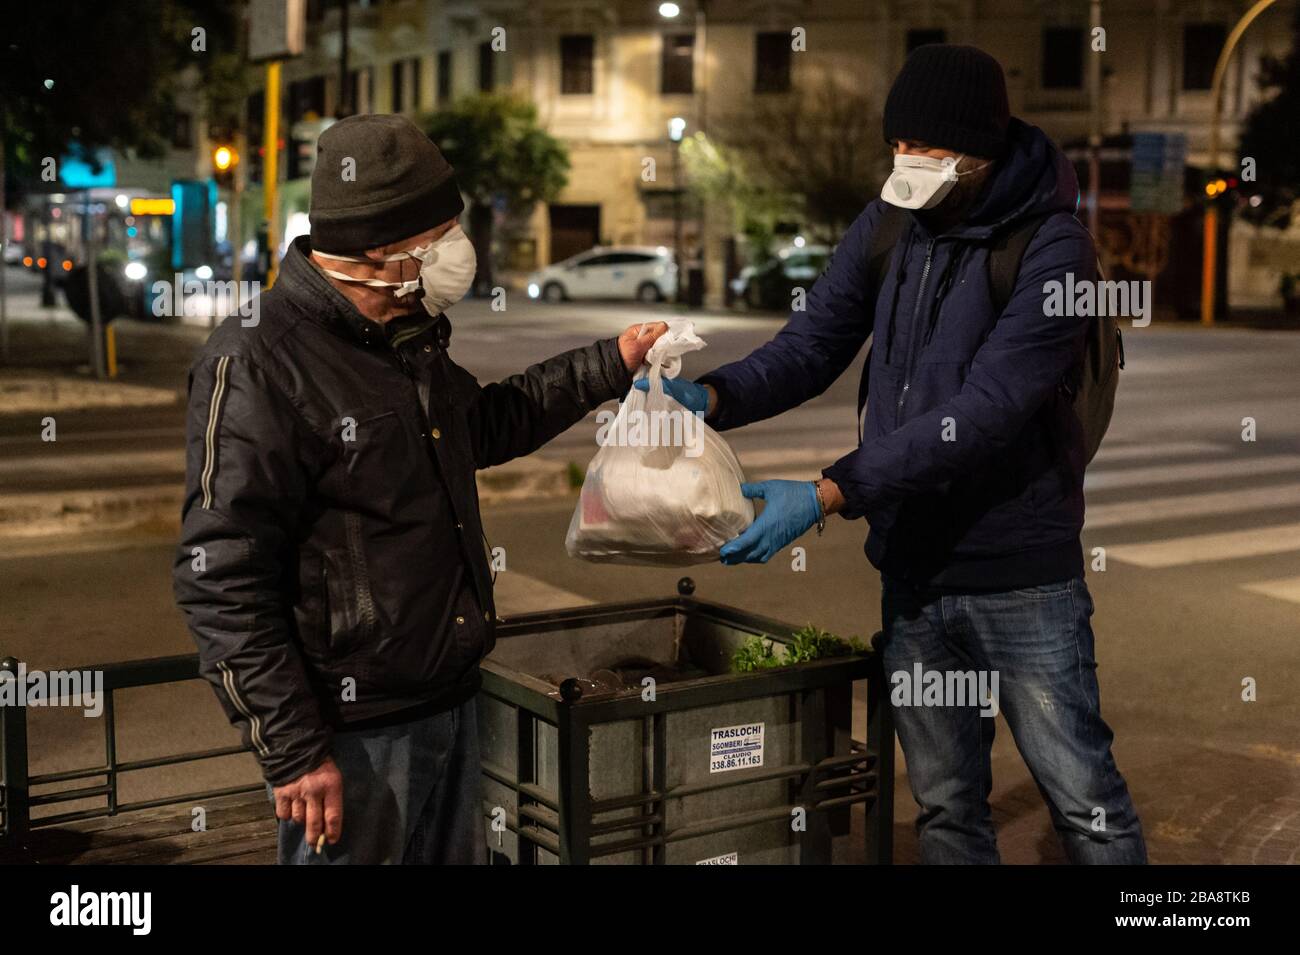 In Rom verteilen die Freiwilligen der Gemeinschaft von Sant'Egidio während der schrecklichen Coronavirus Epidemie, die Italien heimgesucht hat, Mahlzeiten und Gesundheitsdienste an Obdachlose und andere benachteiligte Menschen, die auf den Straßen leben. Stockfoto